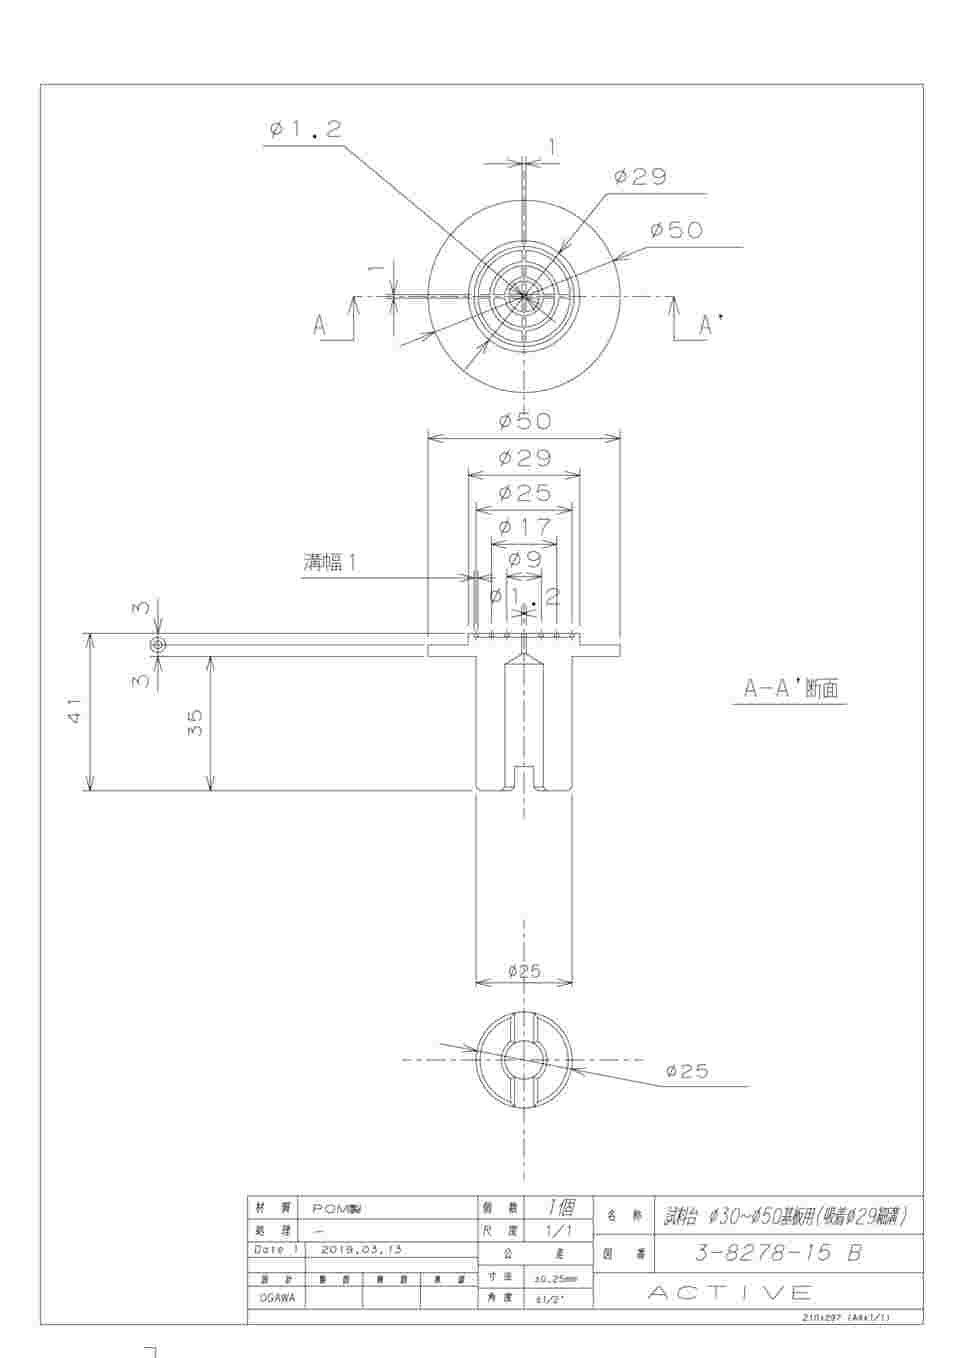 3-8278-15 スピンコーター用試料台（適応基板サイズφ30～50mm） 【AXEL